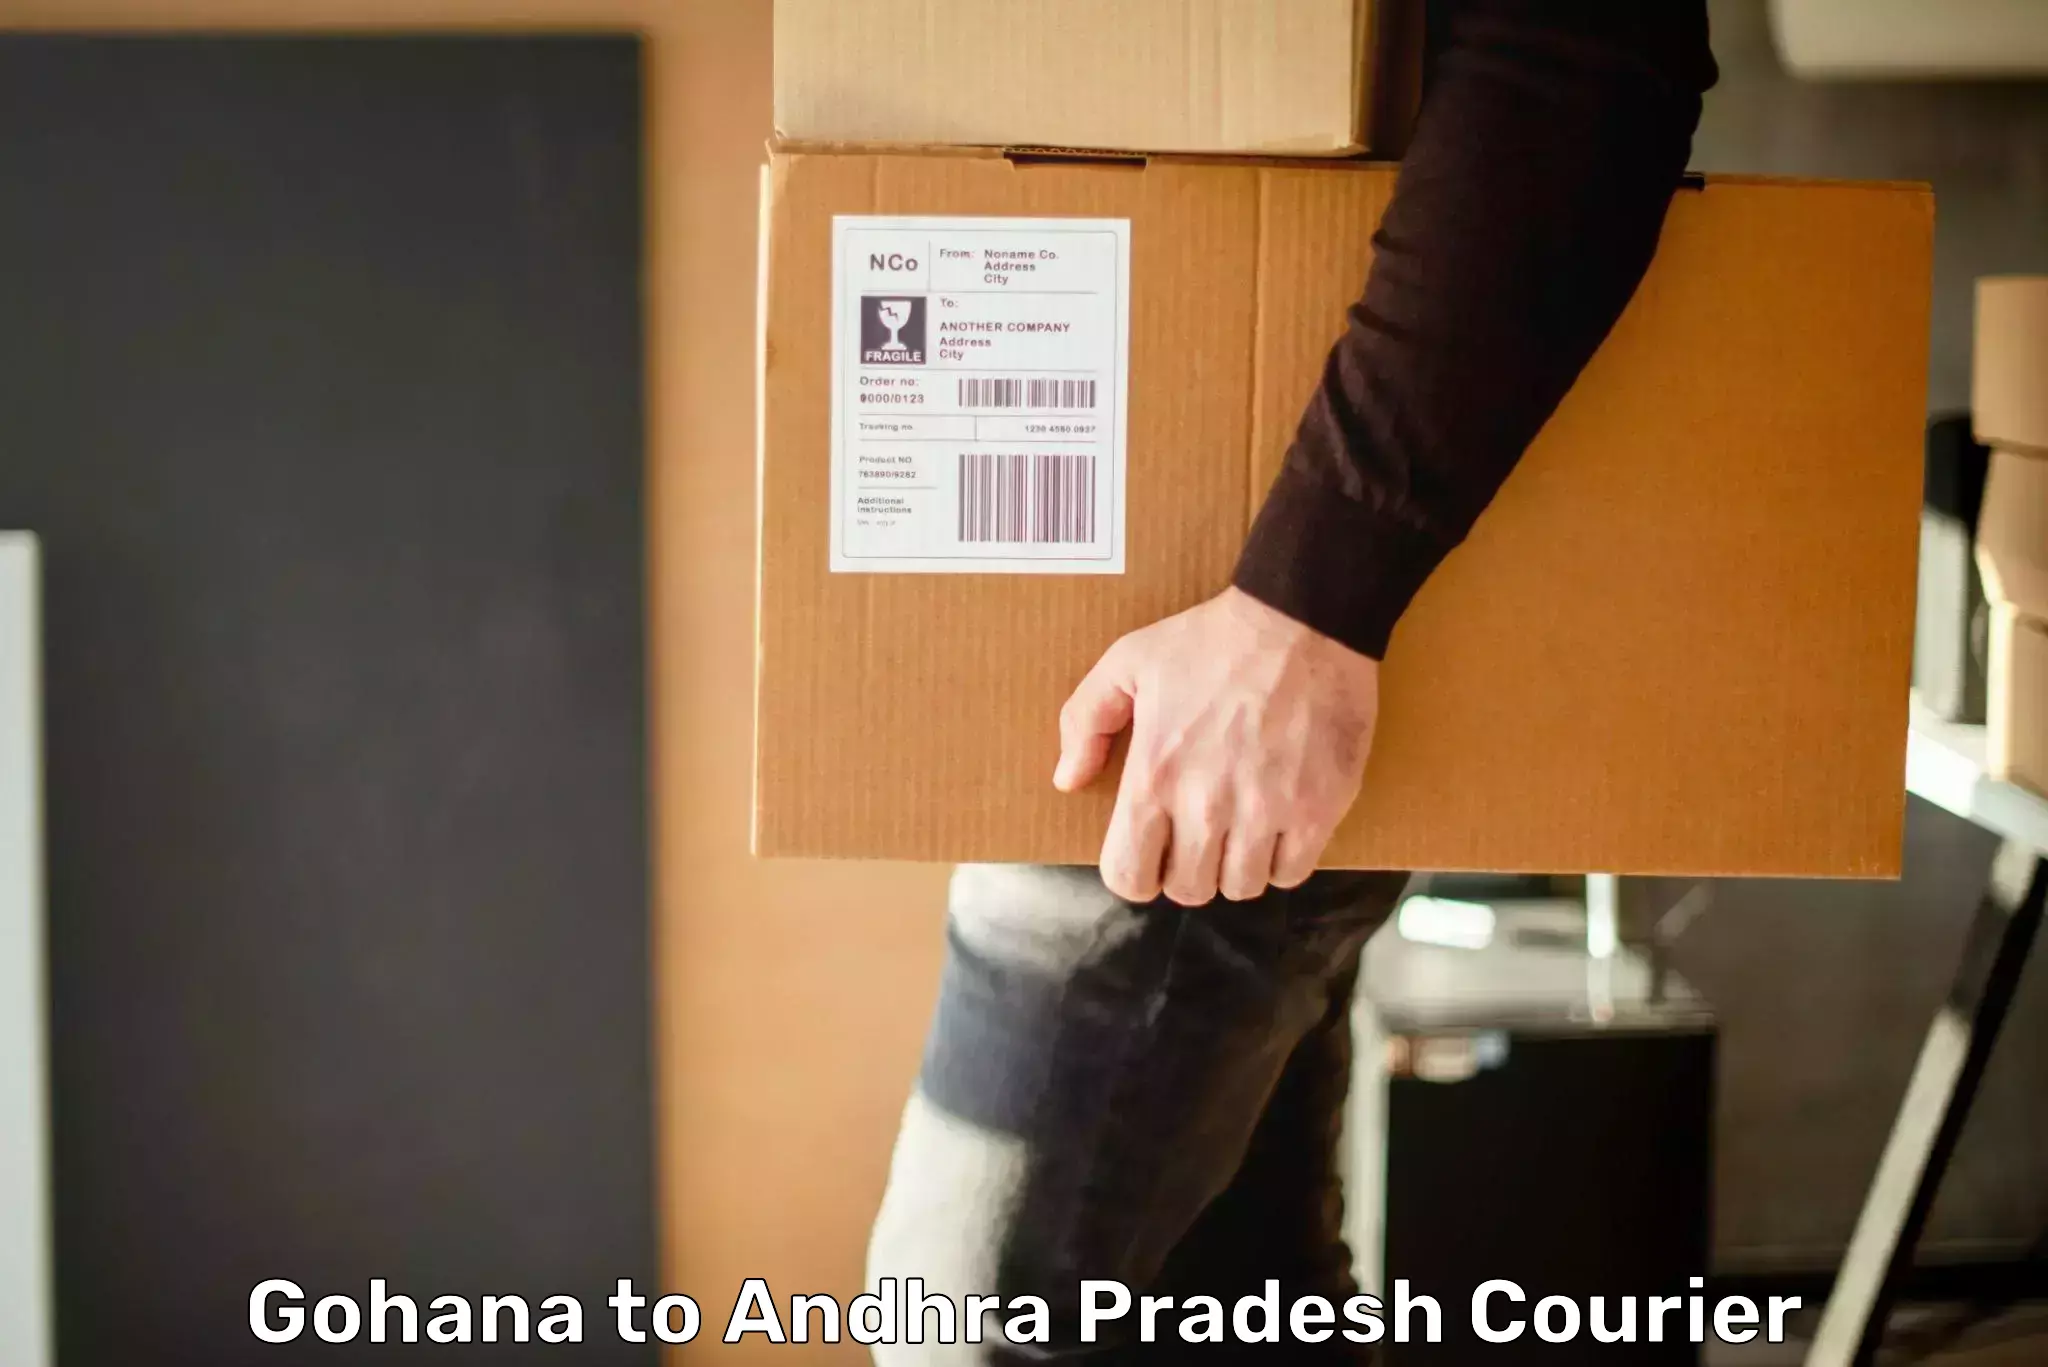 Dynamic courier services Gohana to Andhra Pradesh